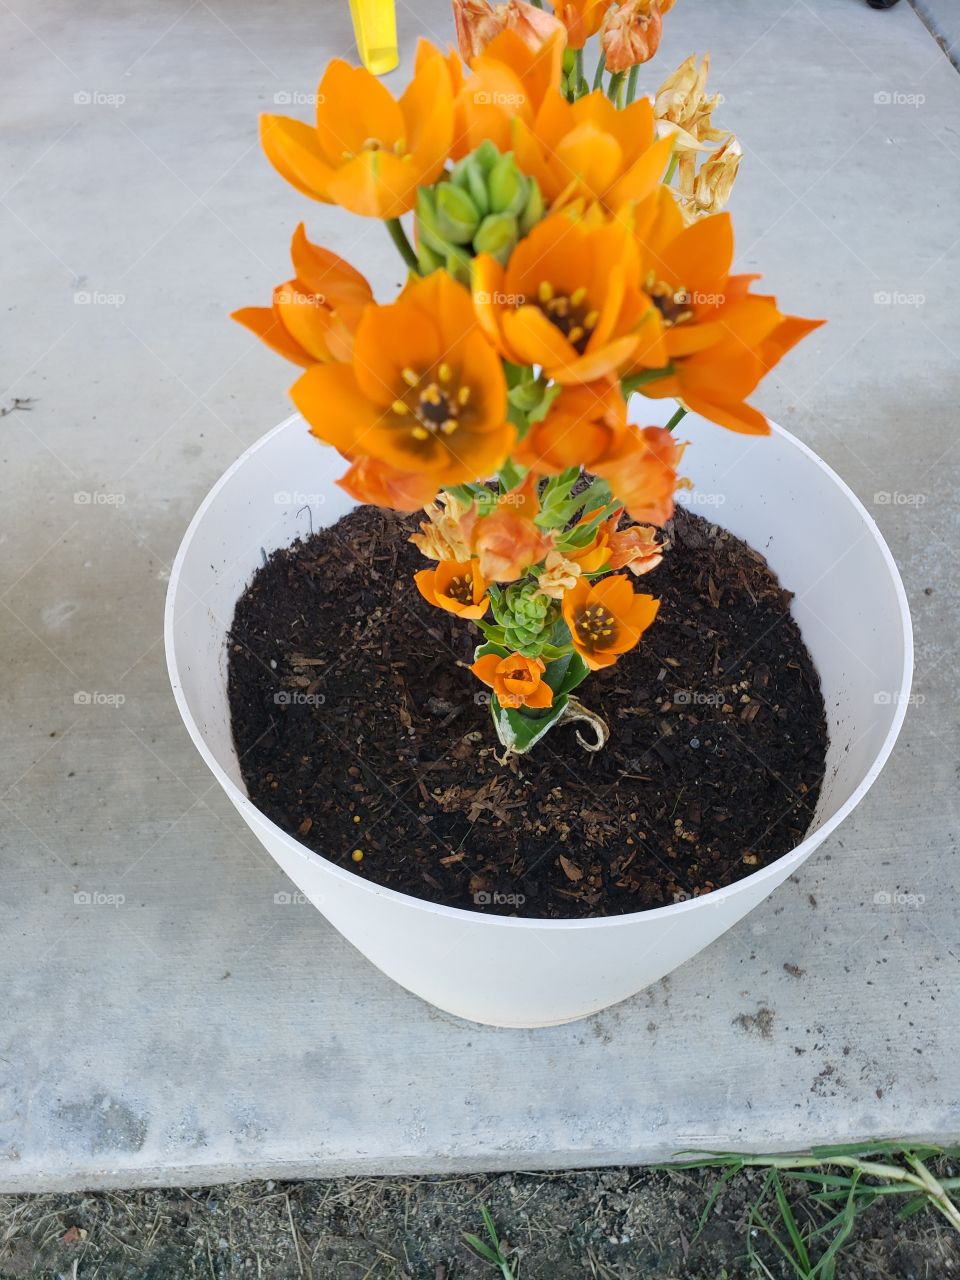 Orange flower tower